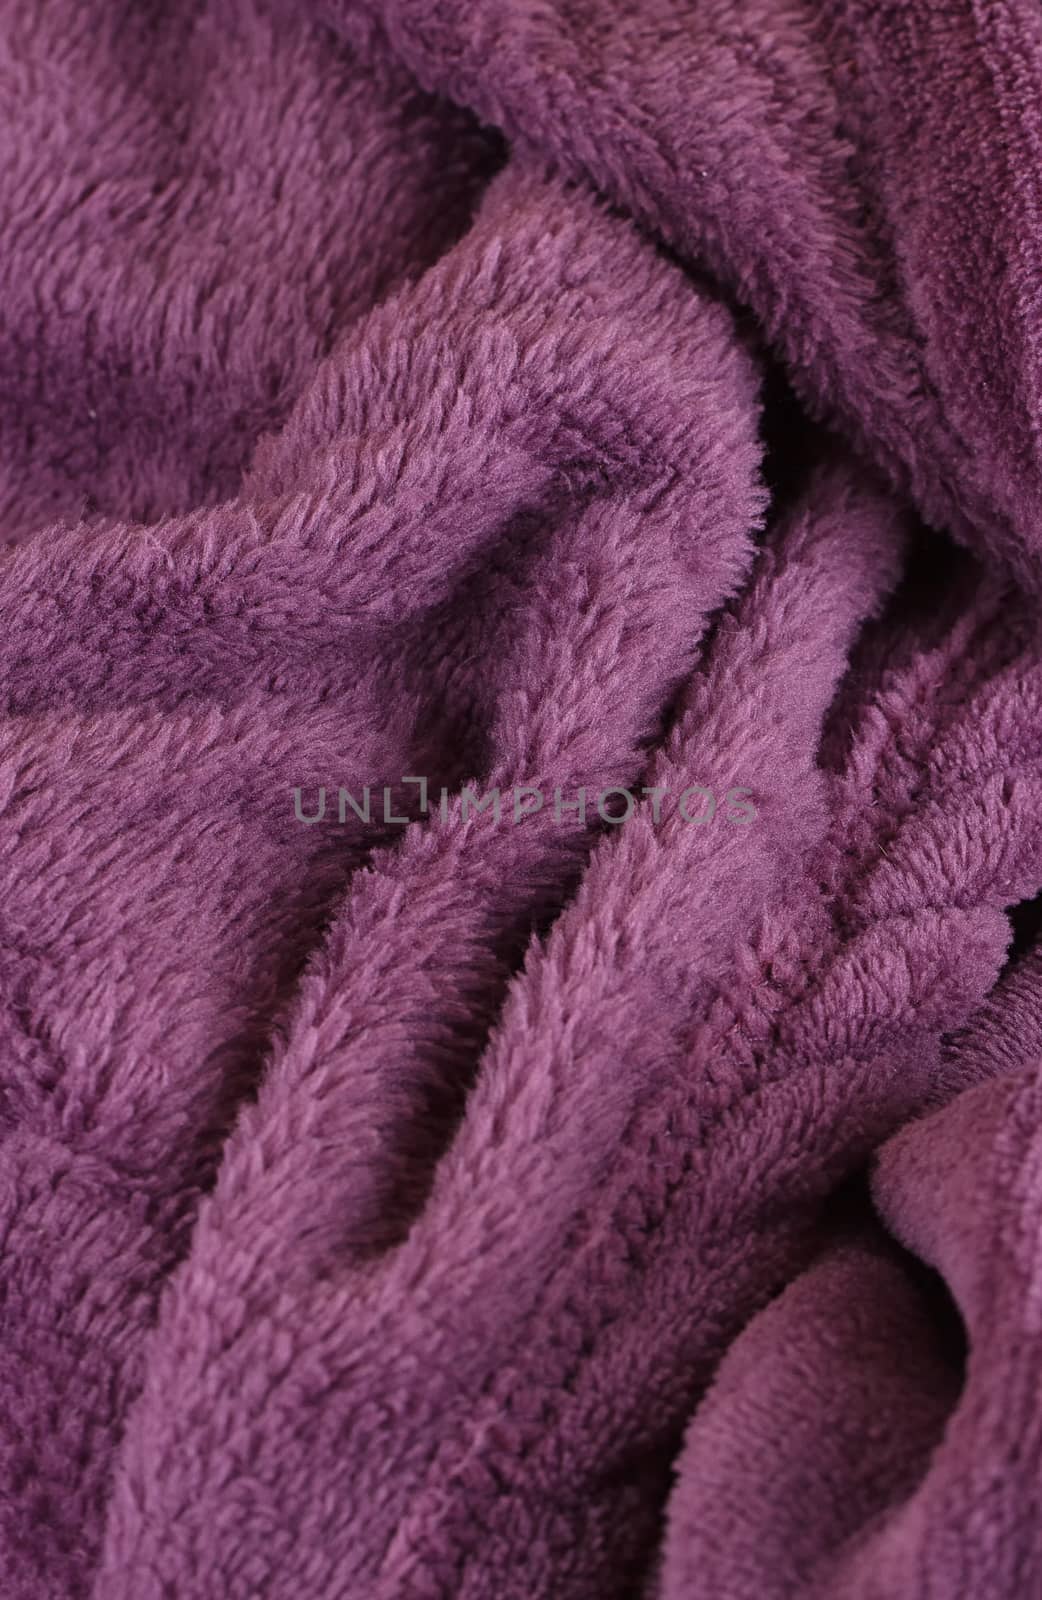 Purple bath fluffy towel by victosha